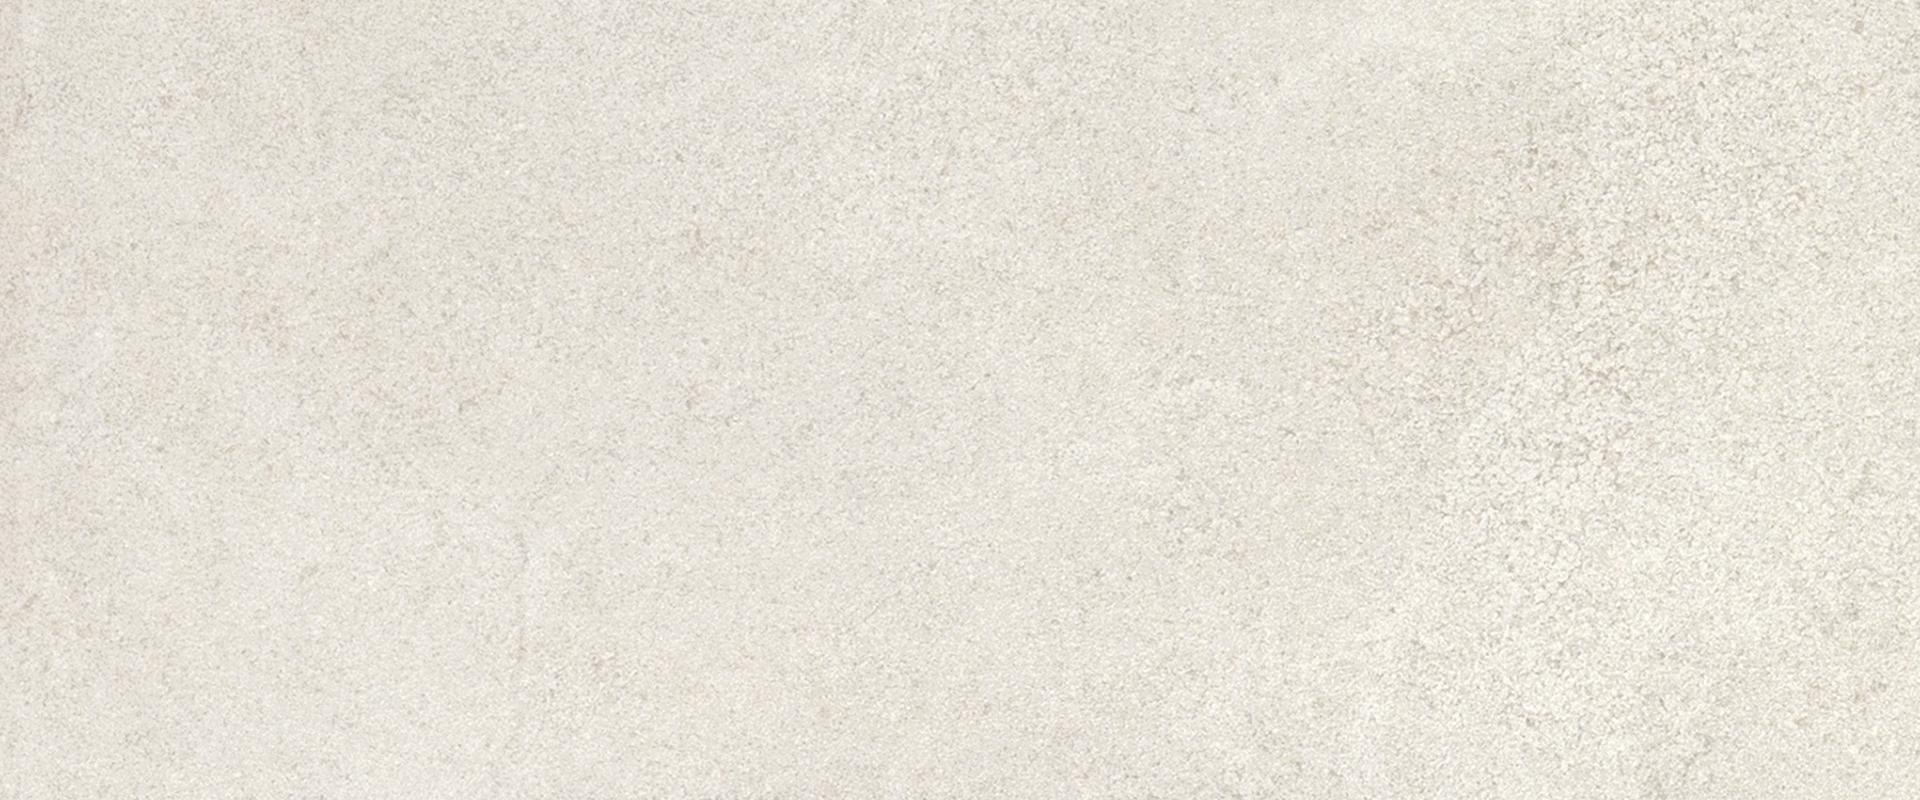 Stone Project: Strutturato White Wall Tile (24"x48"x9.5-mm | strutturato)